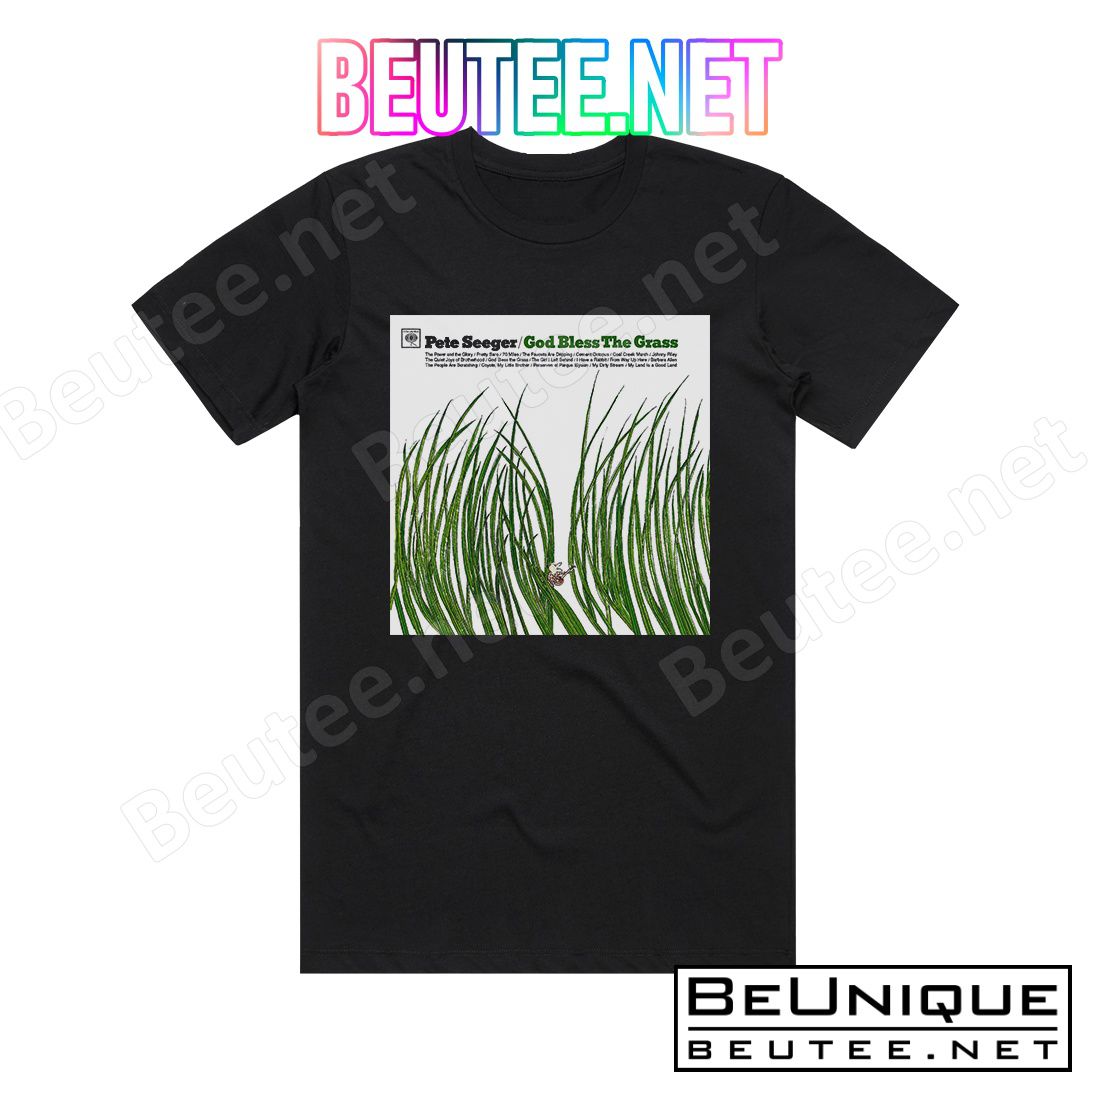 Pete Seeger God Bless The Grass Album Cover T-Shirt